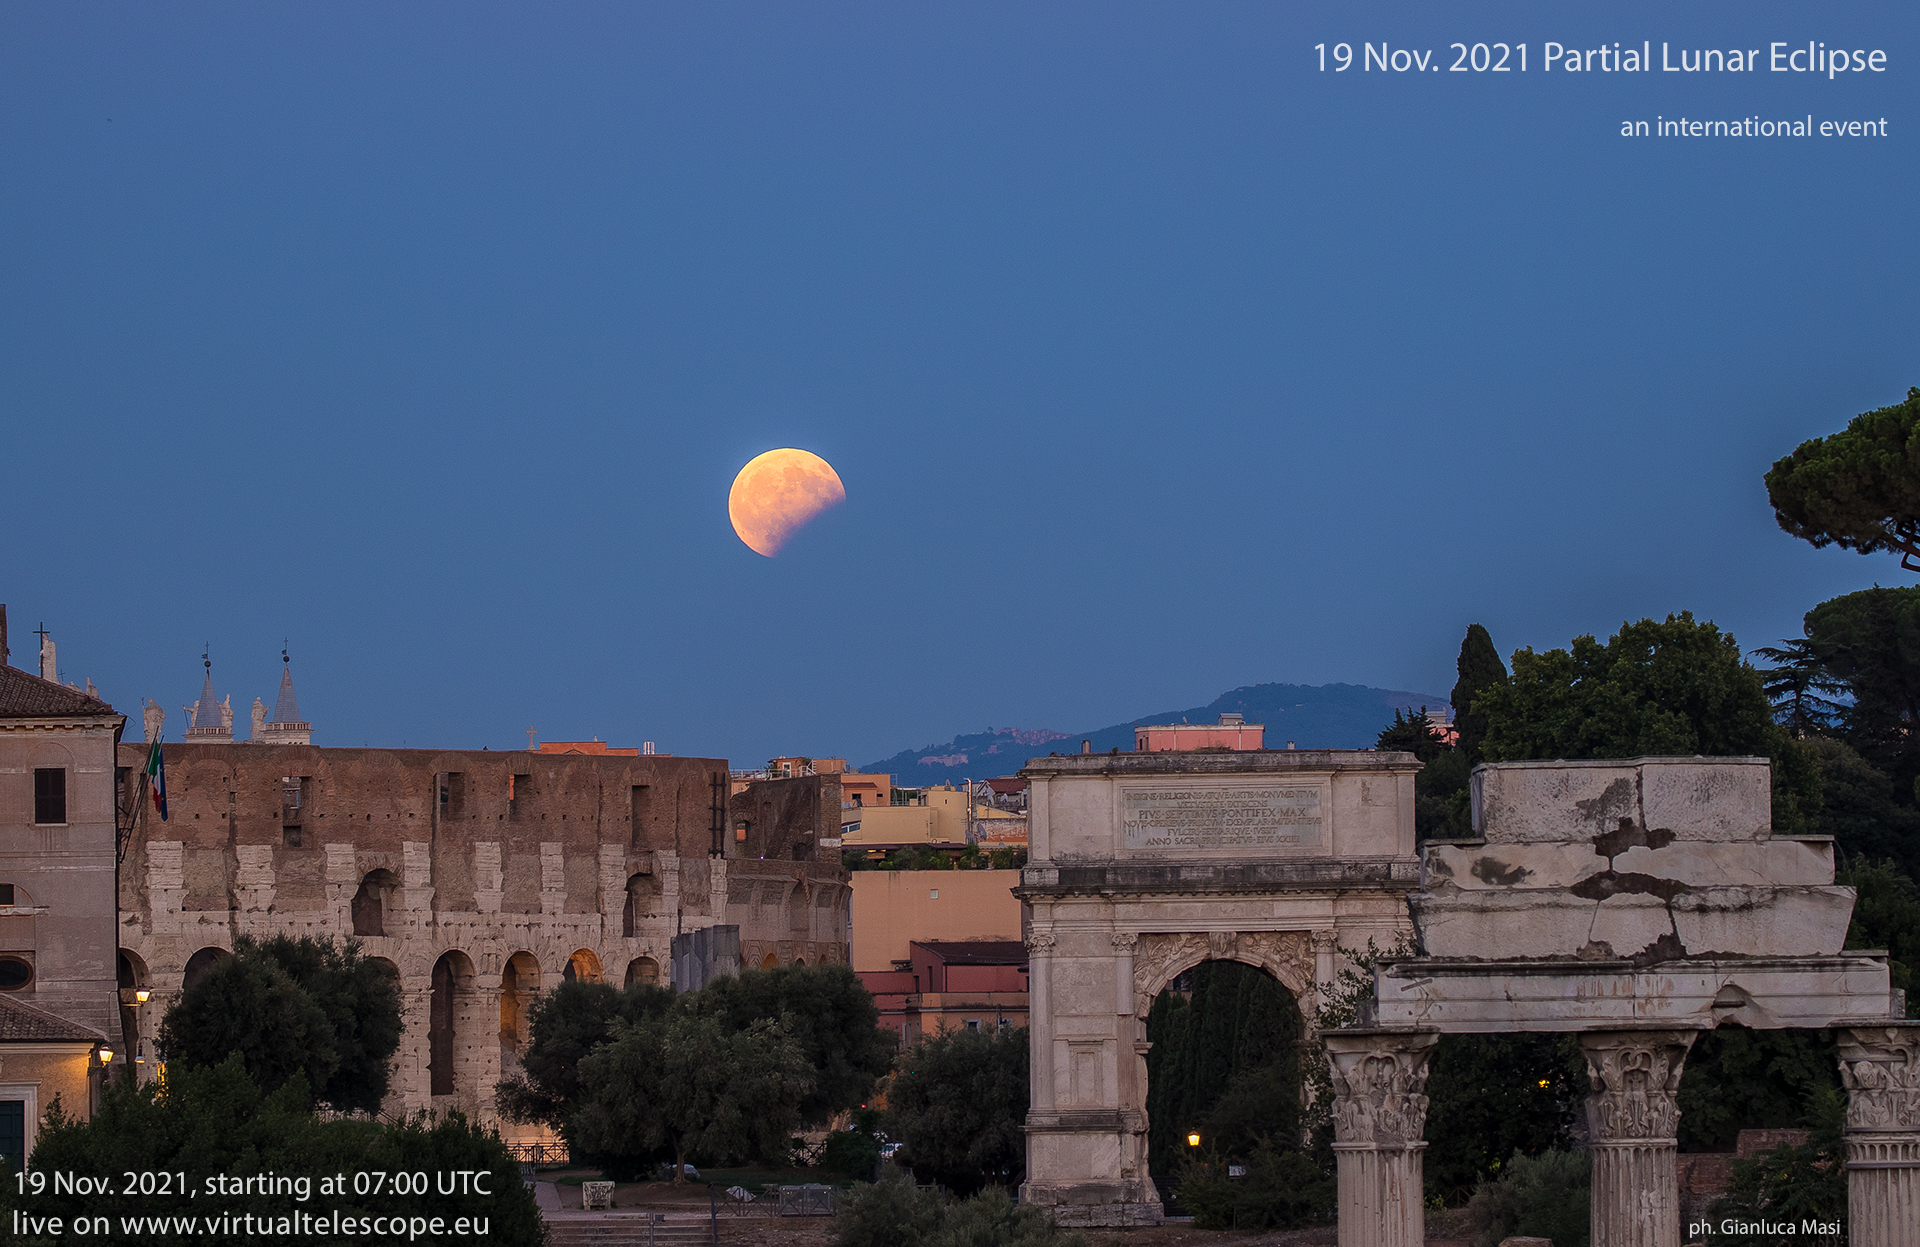 The 19 Nov. 2021 partial Lunar Eclipse: poster of the event.